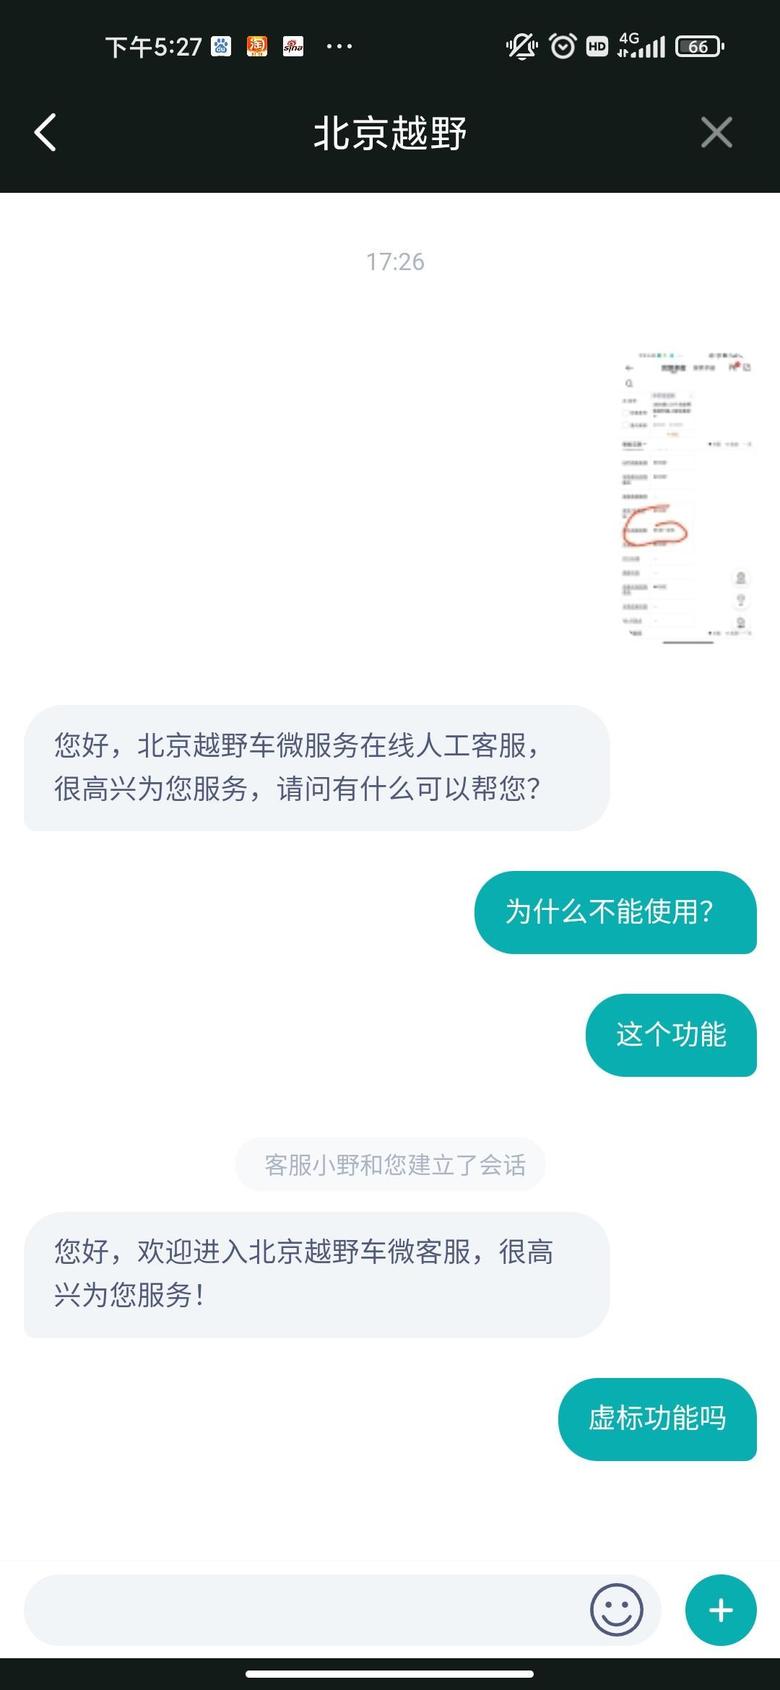 北京bj40有没有小伙伴知道bj40手机互联映射功能怎么使用的呀，20款城市猎人。